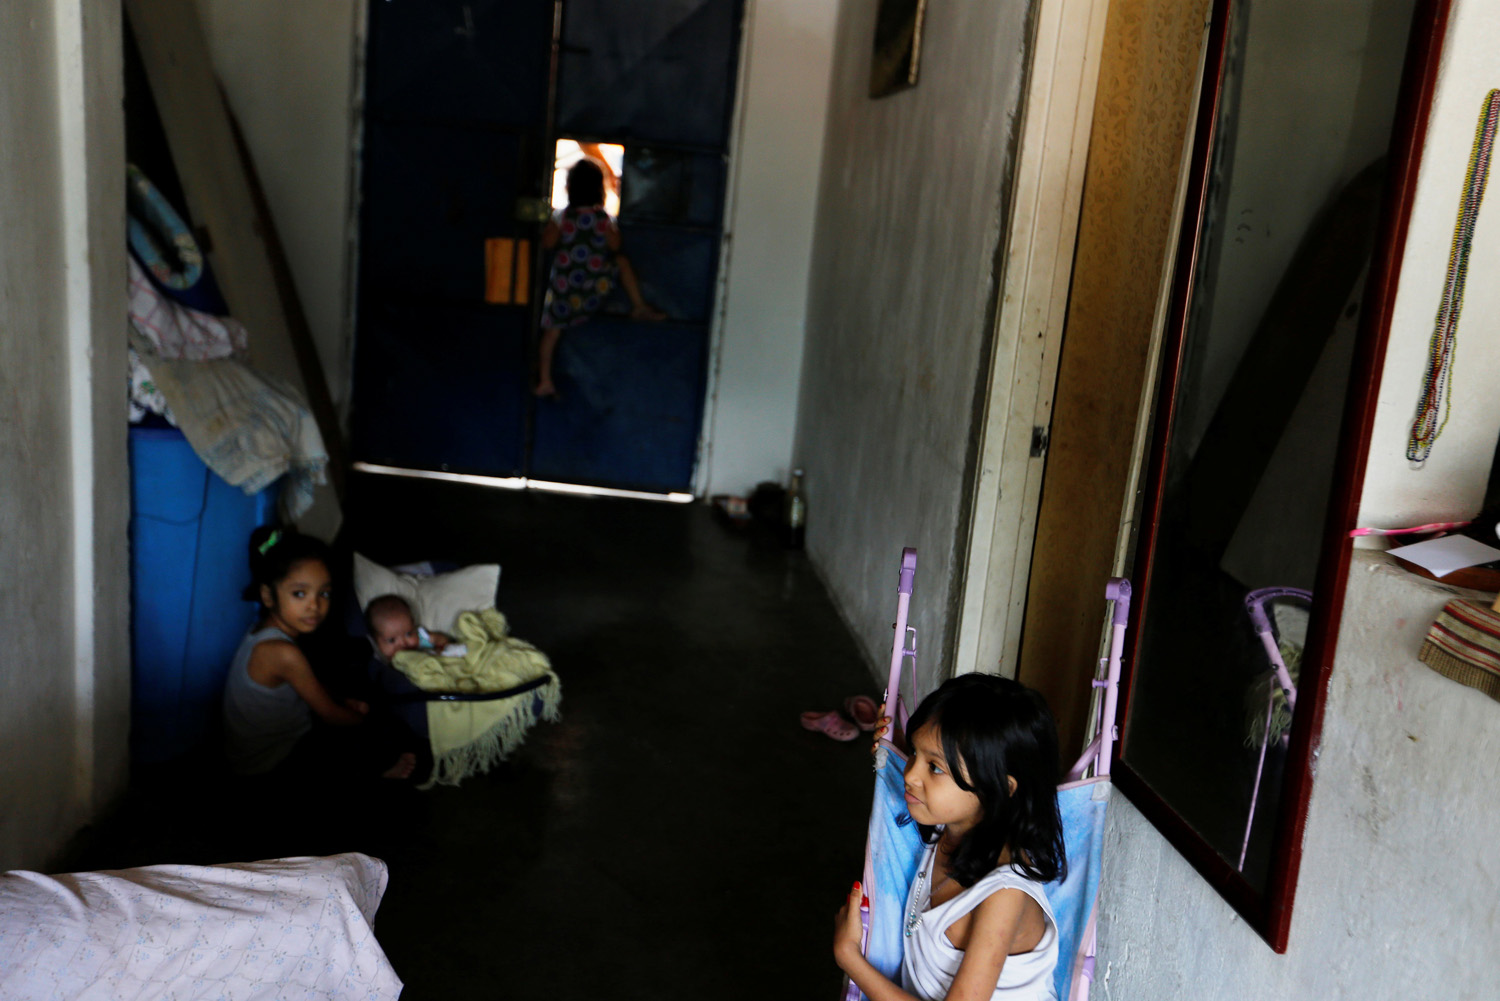 Los niños de Yennifer Padrón y Victor Cordova juegan en la sala de la casa que comparten en la favela de Petare en Caracas, Venezuela, 21 de agosto de 2017. Foto tomada el 21 de agosto de 2017. Para coincidir con la característica VENEZUELA-NIÑOS / REUTERS / Andres Martínez Casares